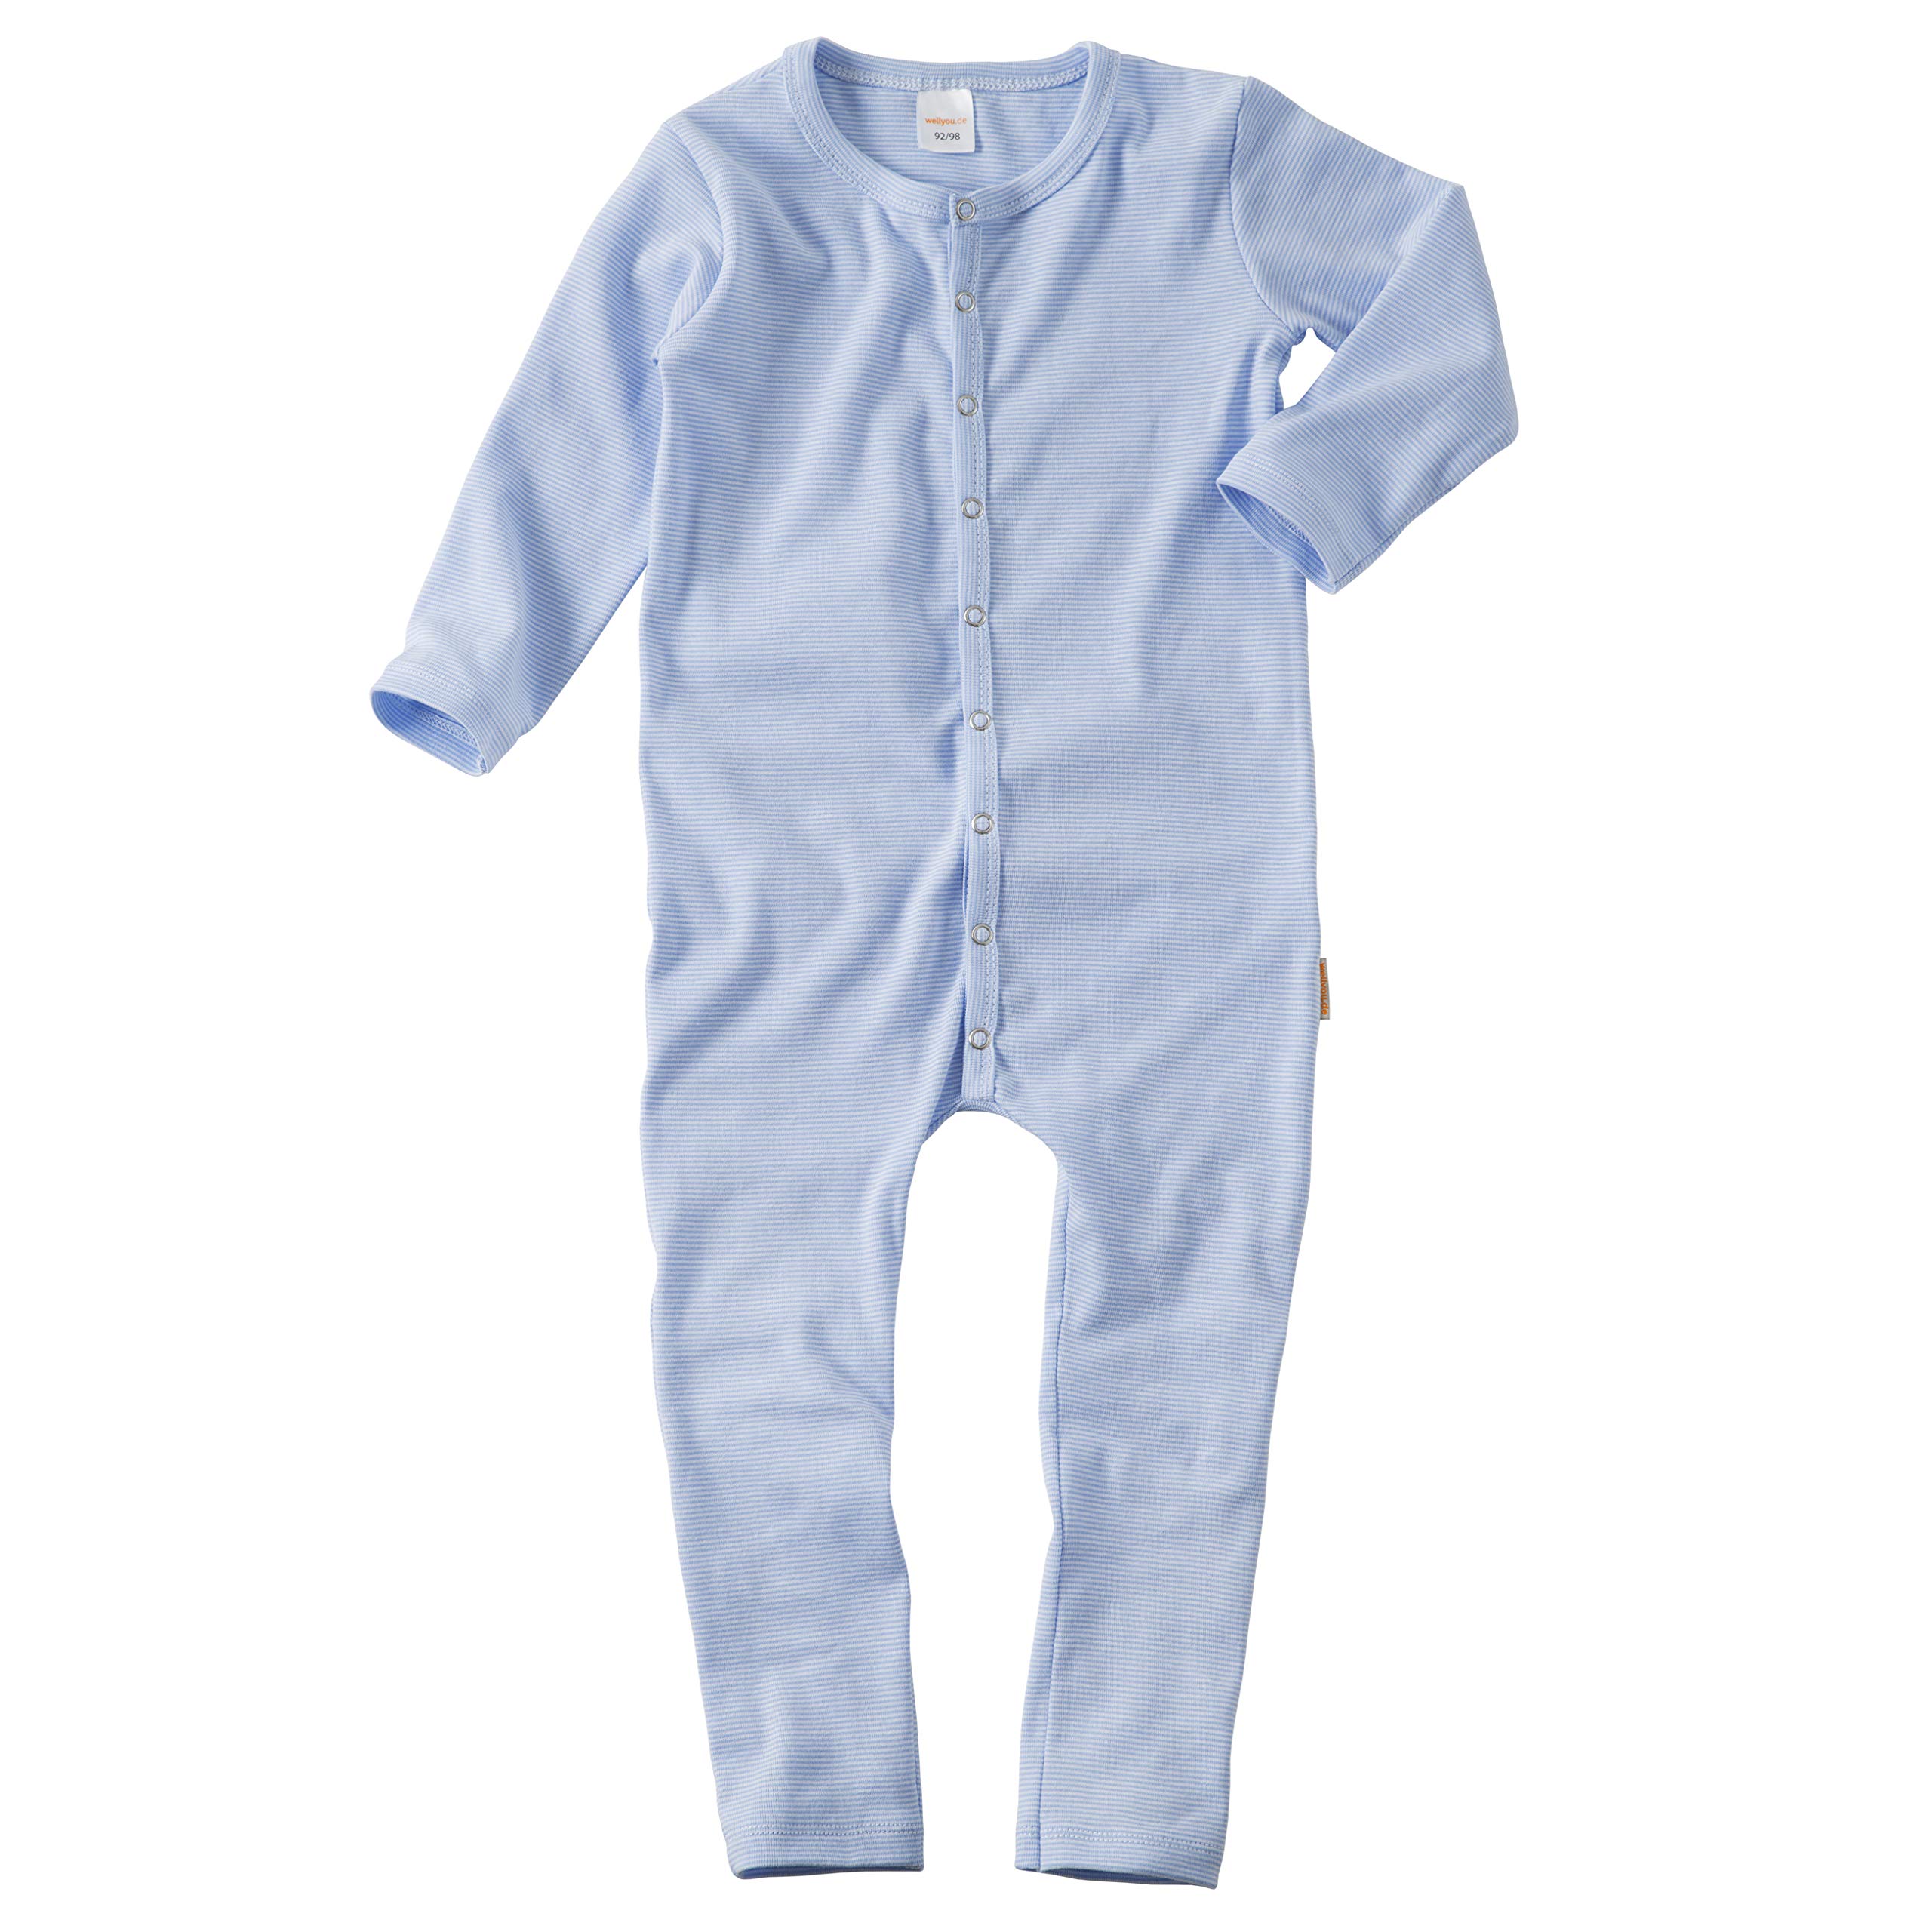 wellyou, Schlafanzug, Pyjama für Jungen und Mädchen, Einteiler langarm, Baby Kinder, hell-blau weiß gestreift, geringelt, Feinripp 100% Baumwolle, Größe:92 - 98 Blau